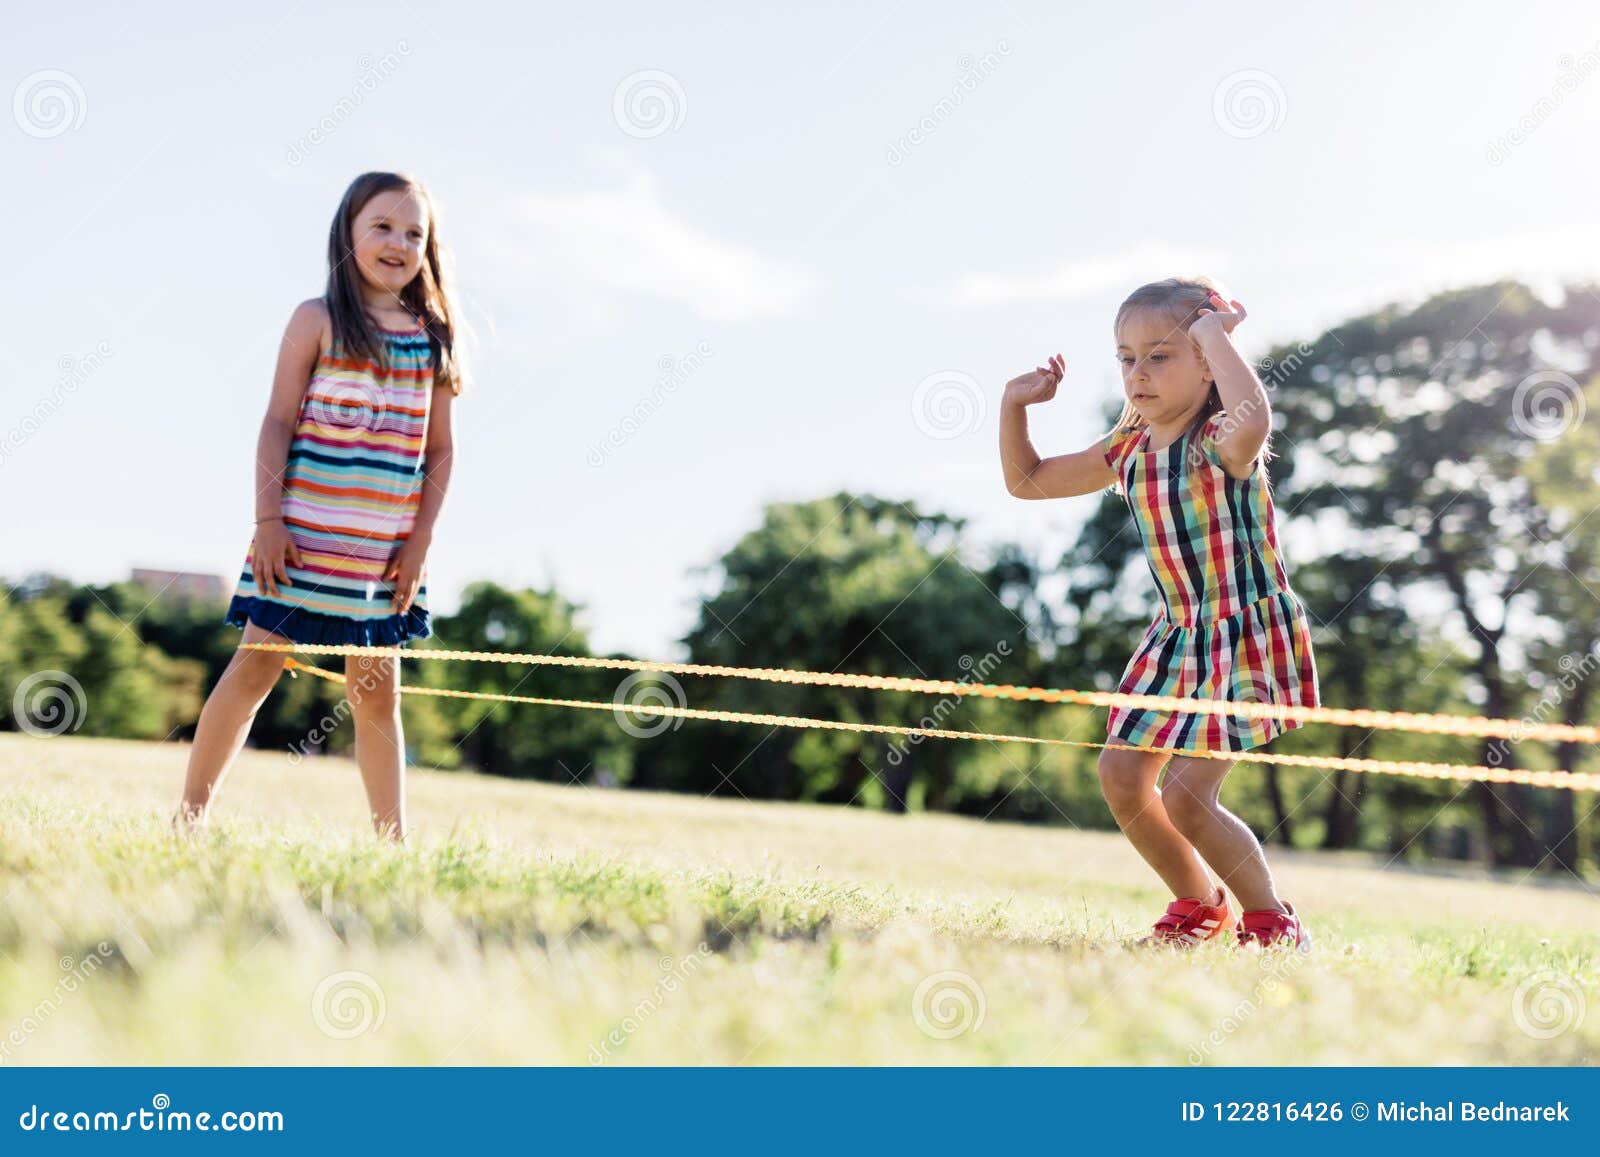 Deux Filles Jouant La Corde à Sauter Chinoise En Parc Photo stock